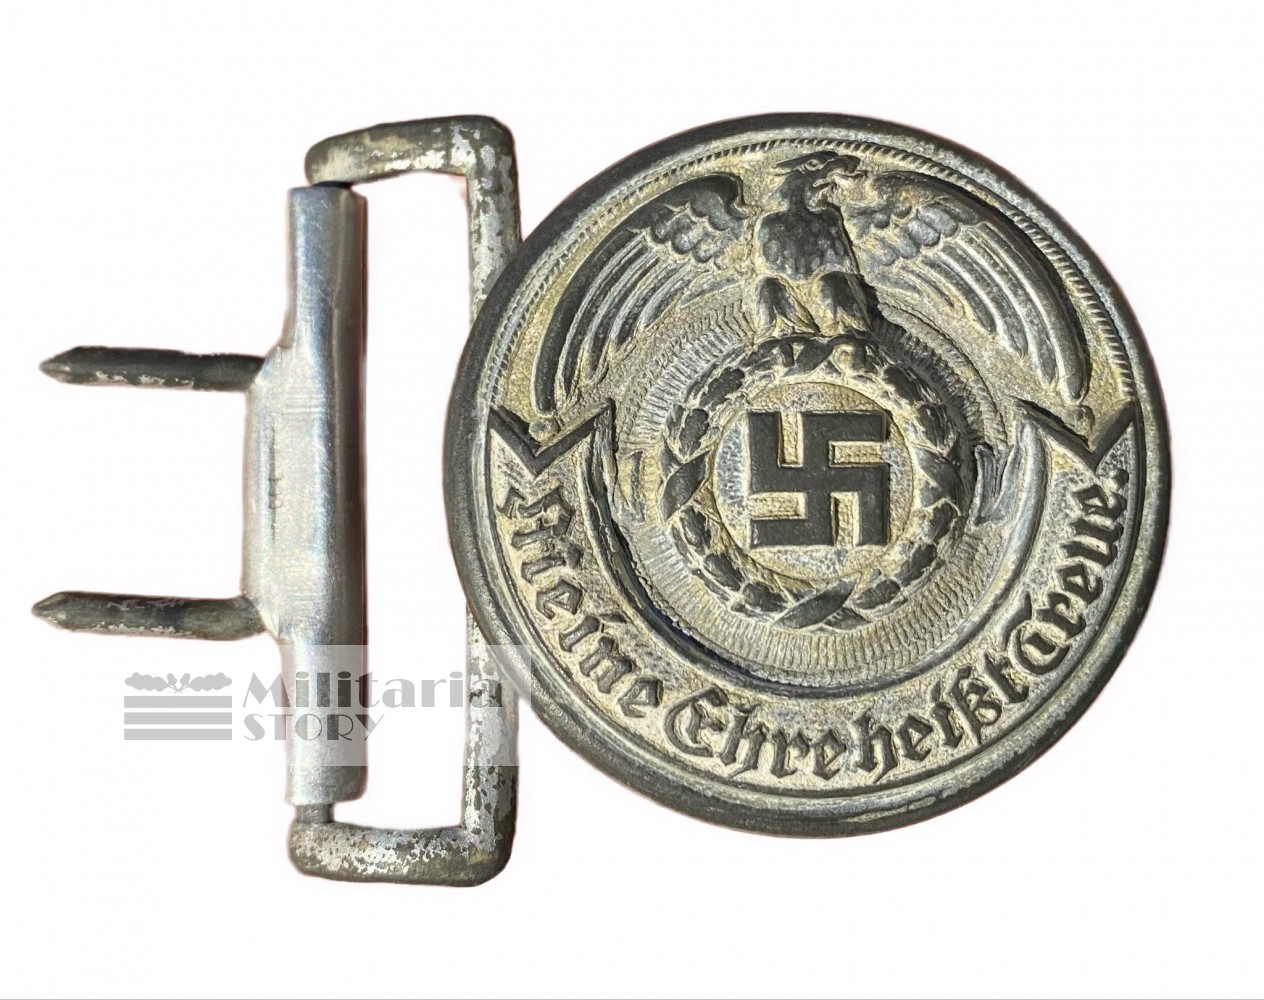 Waffen SS Officer buckle with belt  - Waffen SS Officer buckle with belt : WW2 German Equipment